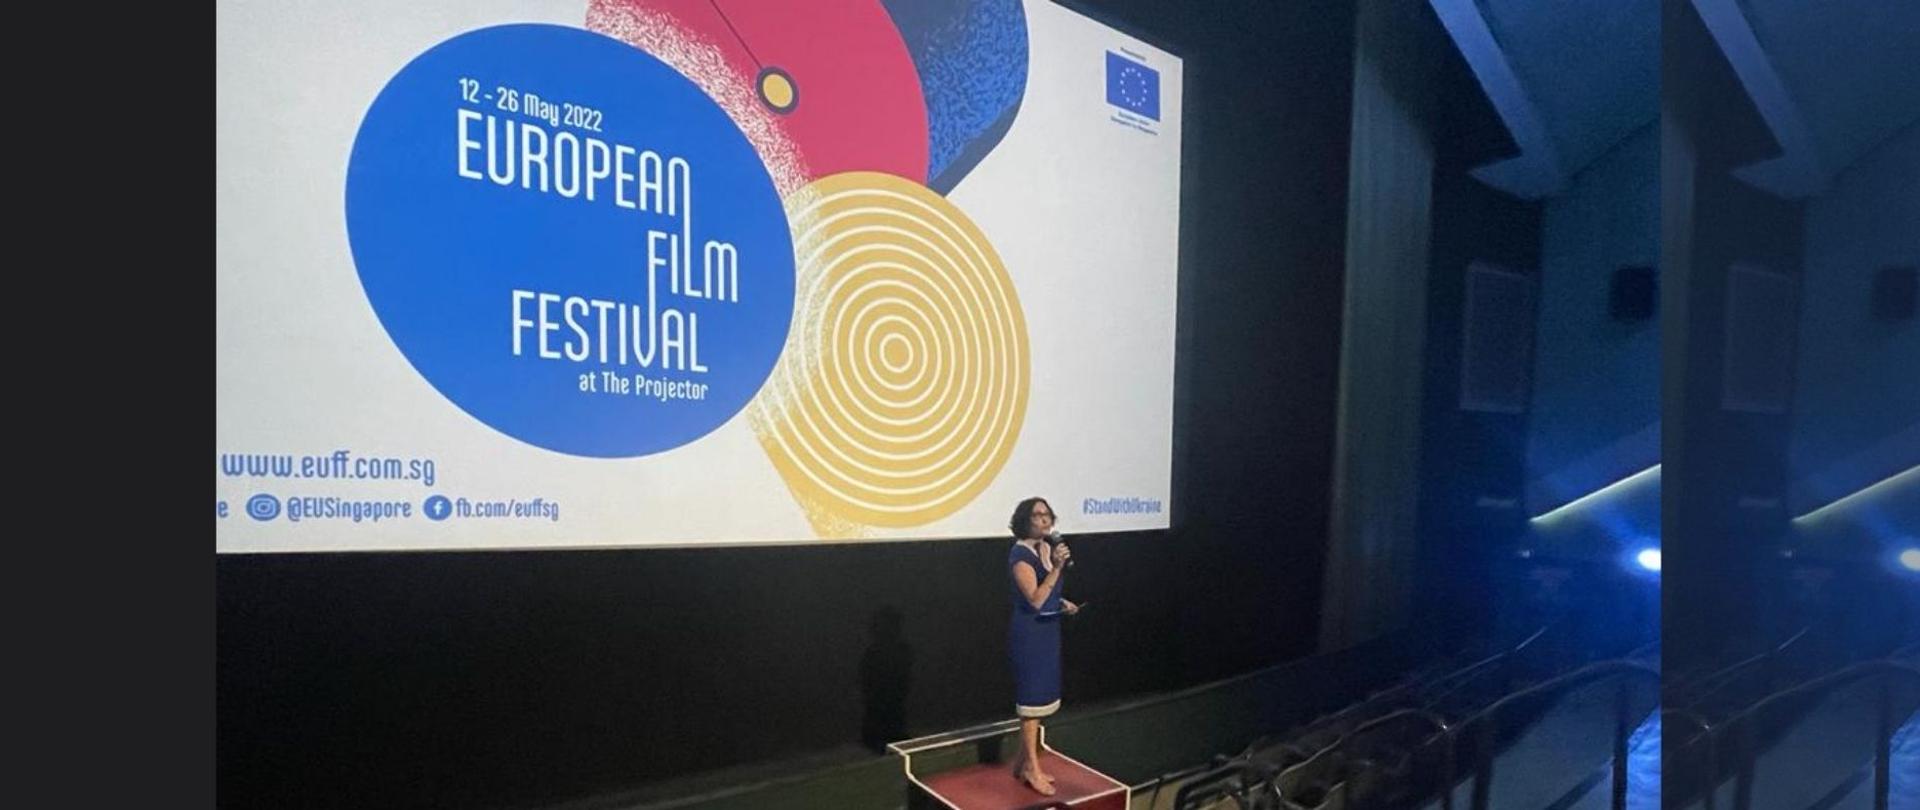 EUFF 2022 w Singapurze - projekcja polskiego filmu "Never Gonna Snow Again". Przemówienie Magdaleny Bogdzieiwcz, Ambasador RP w Singapurze przed pokazem.